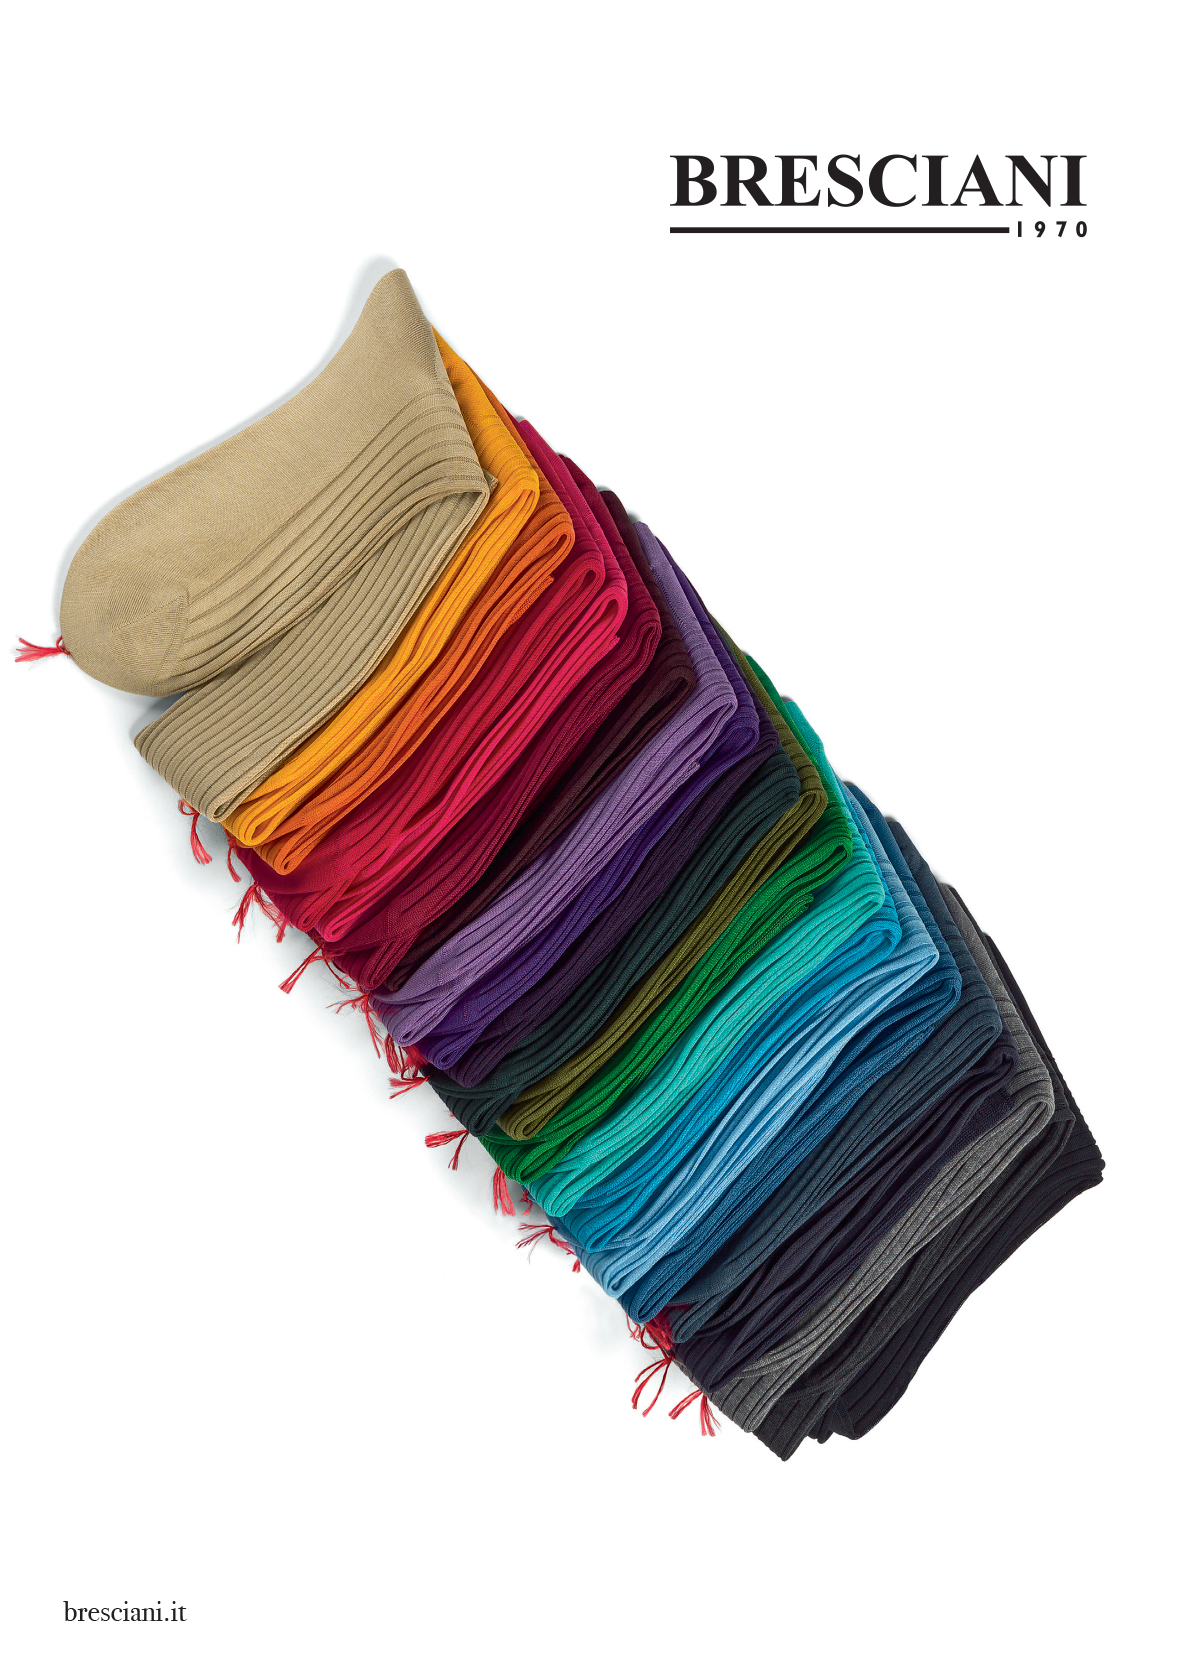 Bresciani styling concept, colored socks